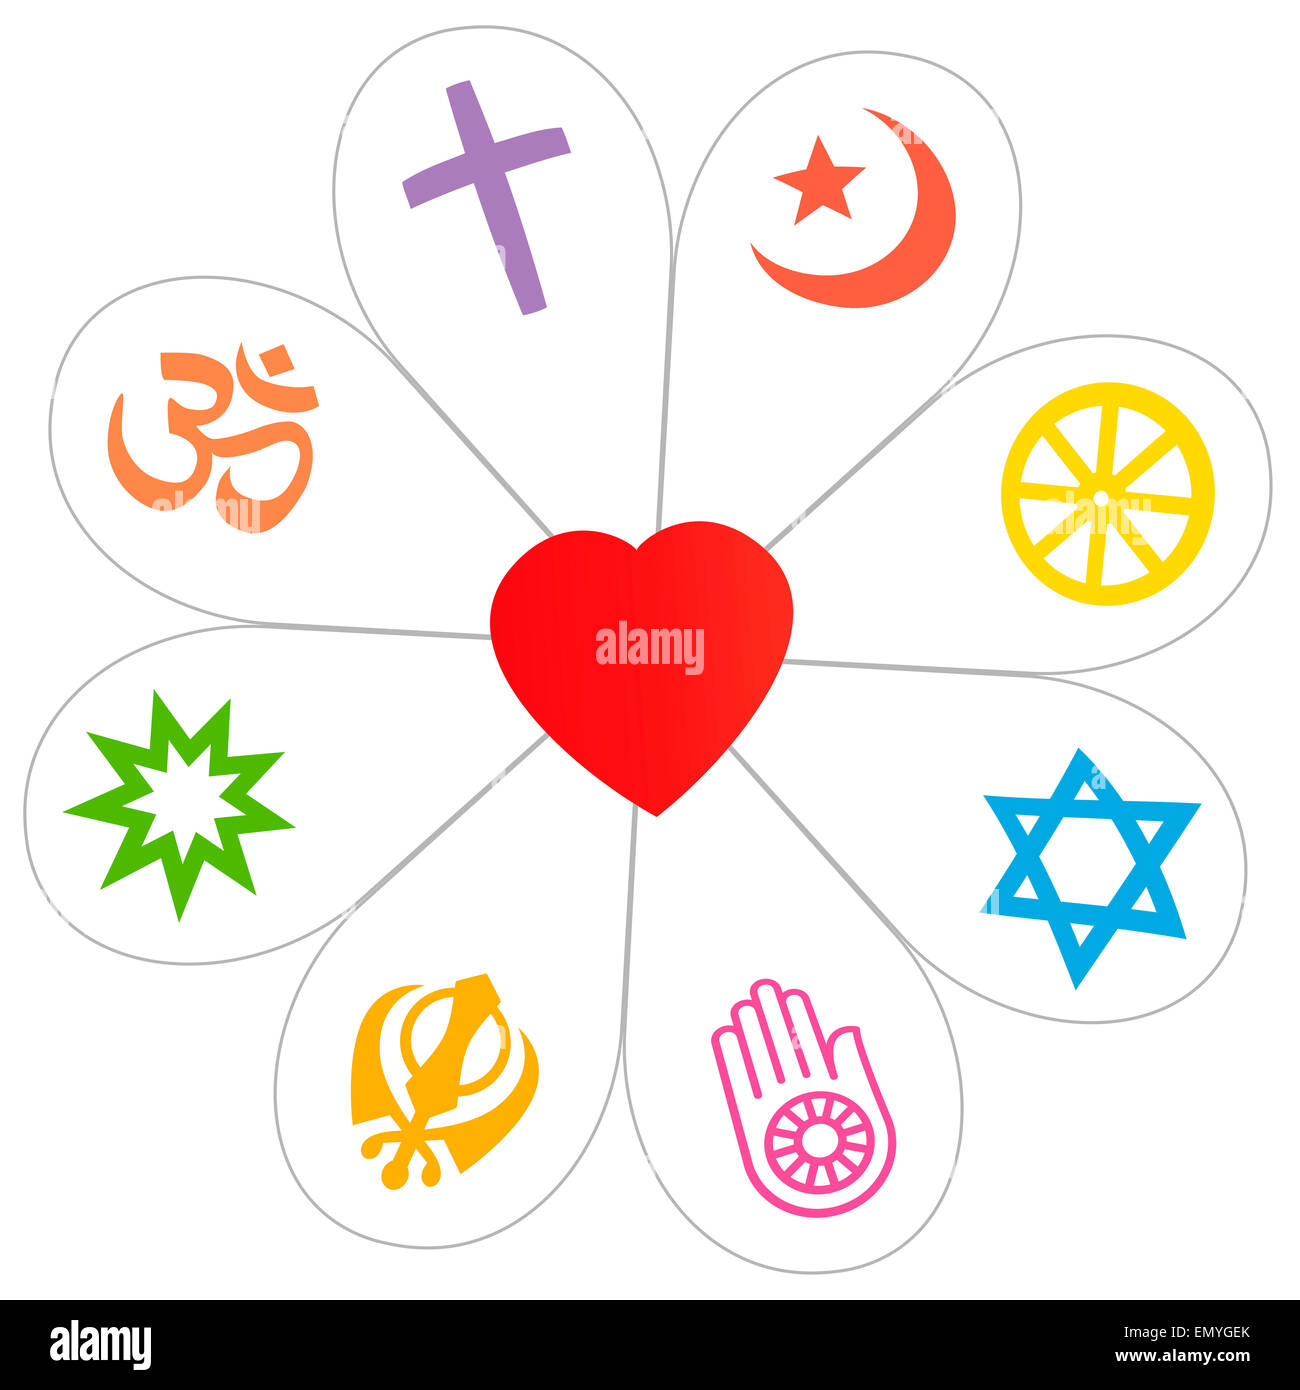 Les symboles de la religion qui forment une fleur avec un coeur comme symbole de l'unité religieuse ou de banalité. Illustration sur fond blanc Banque D'Images